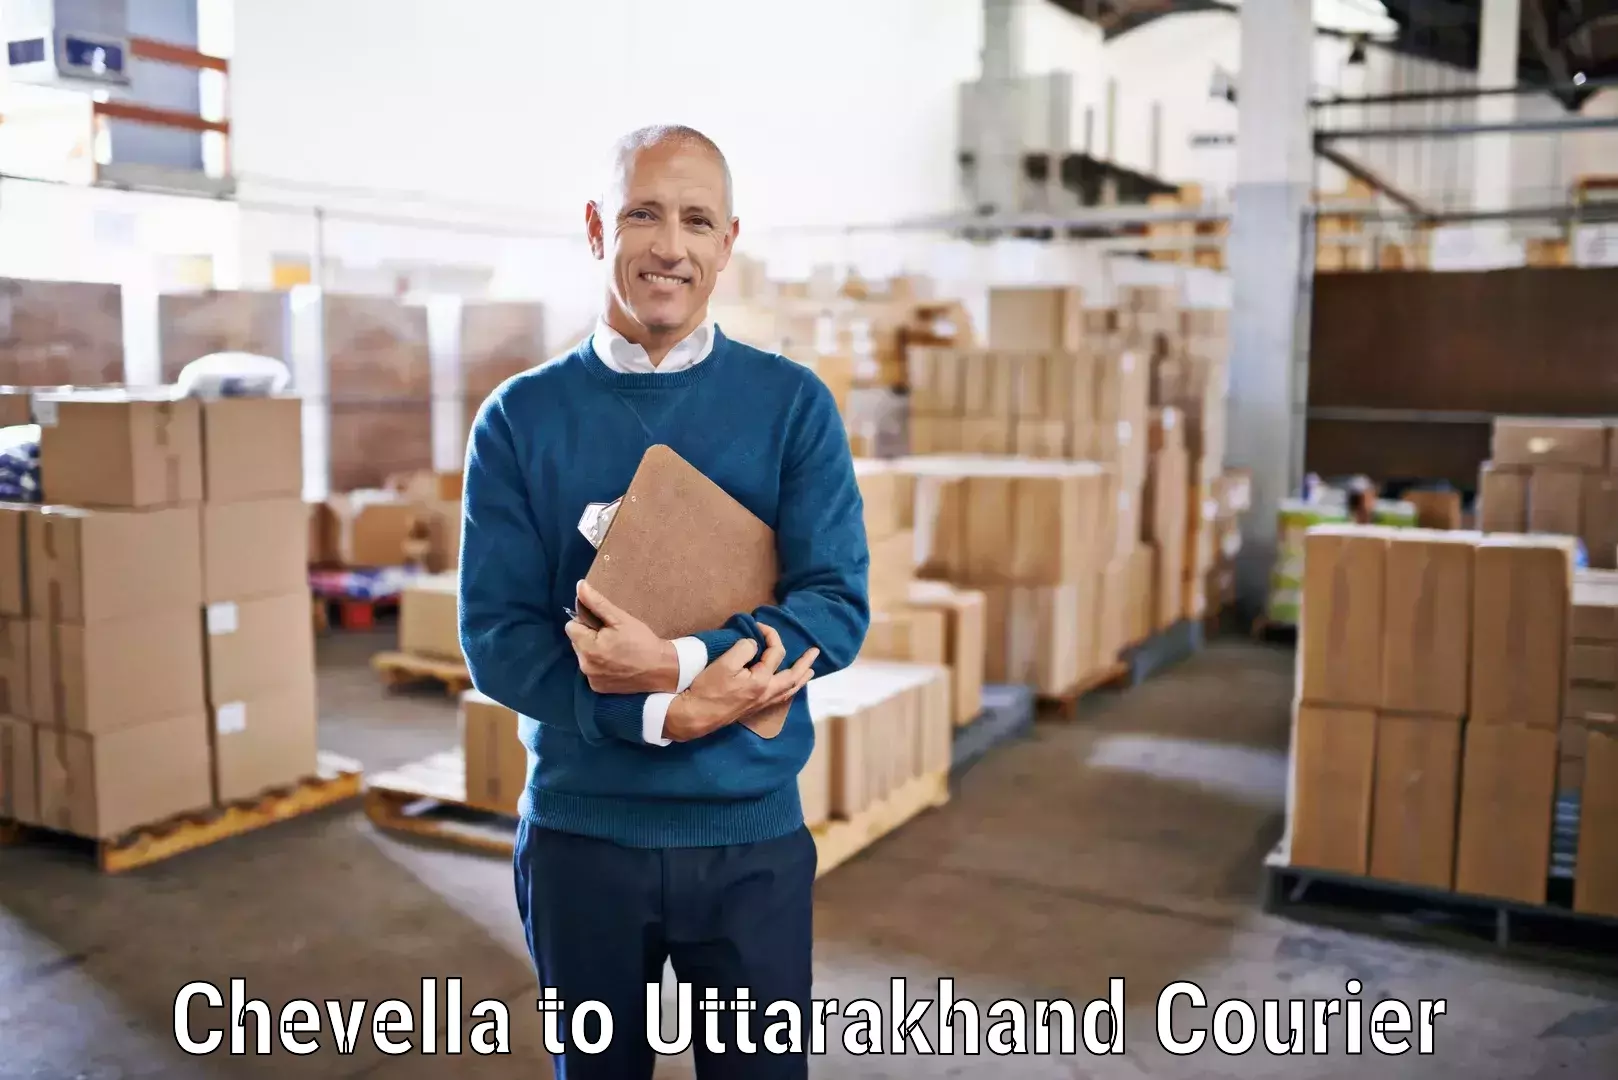 Courier service comparison Chevella to Gopeshwar